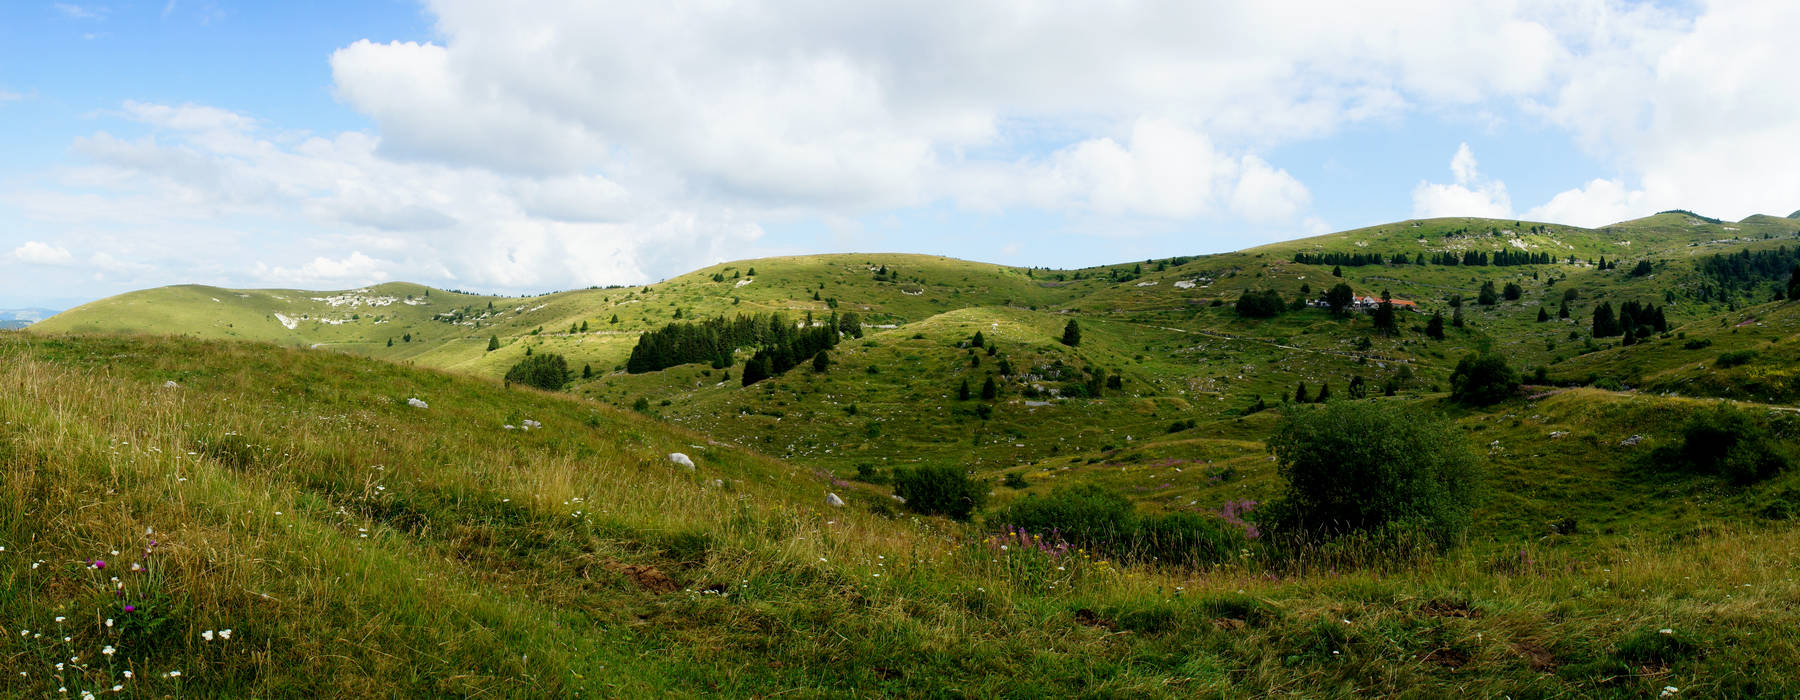 Monte Grappa - fotografia panoramica